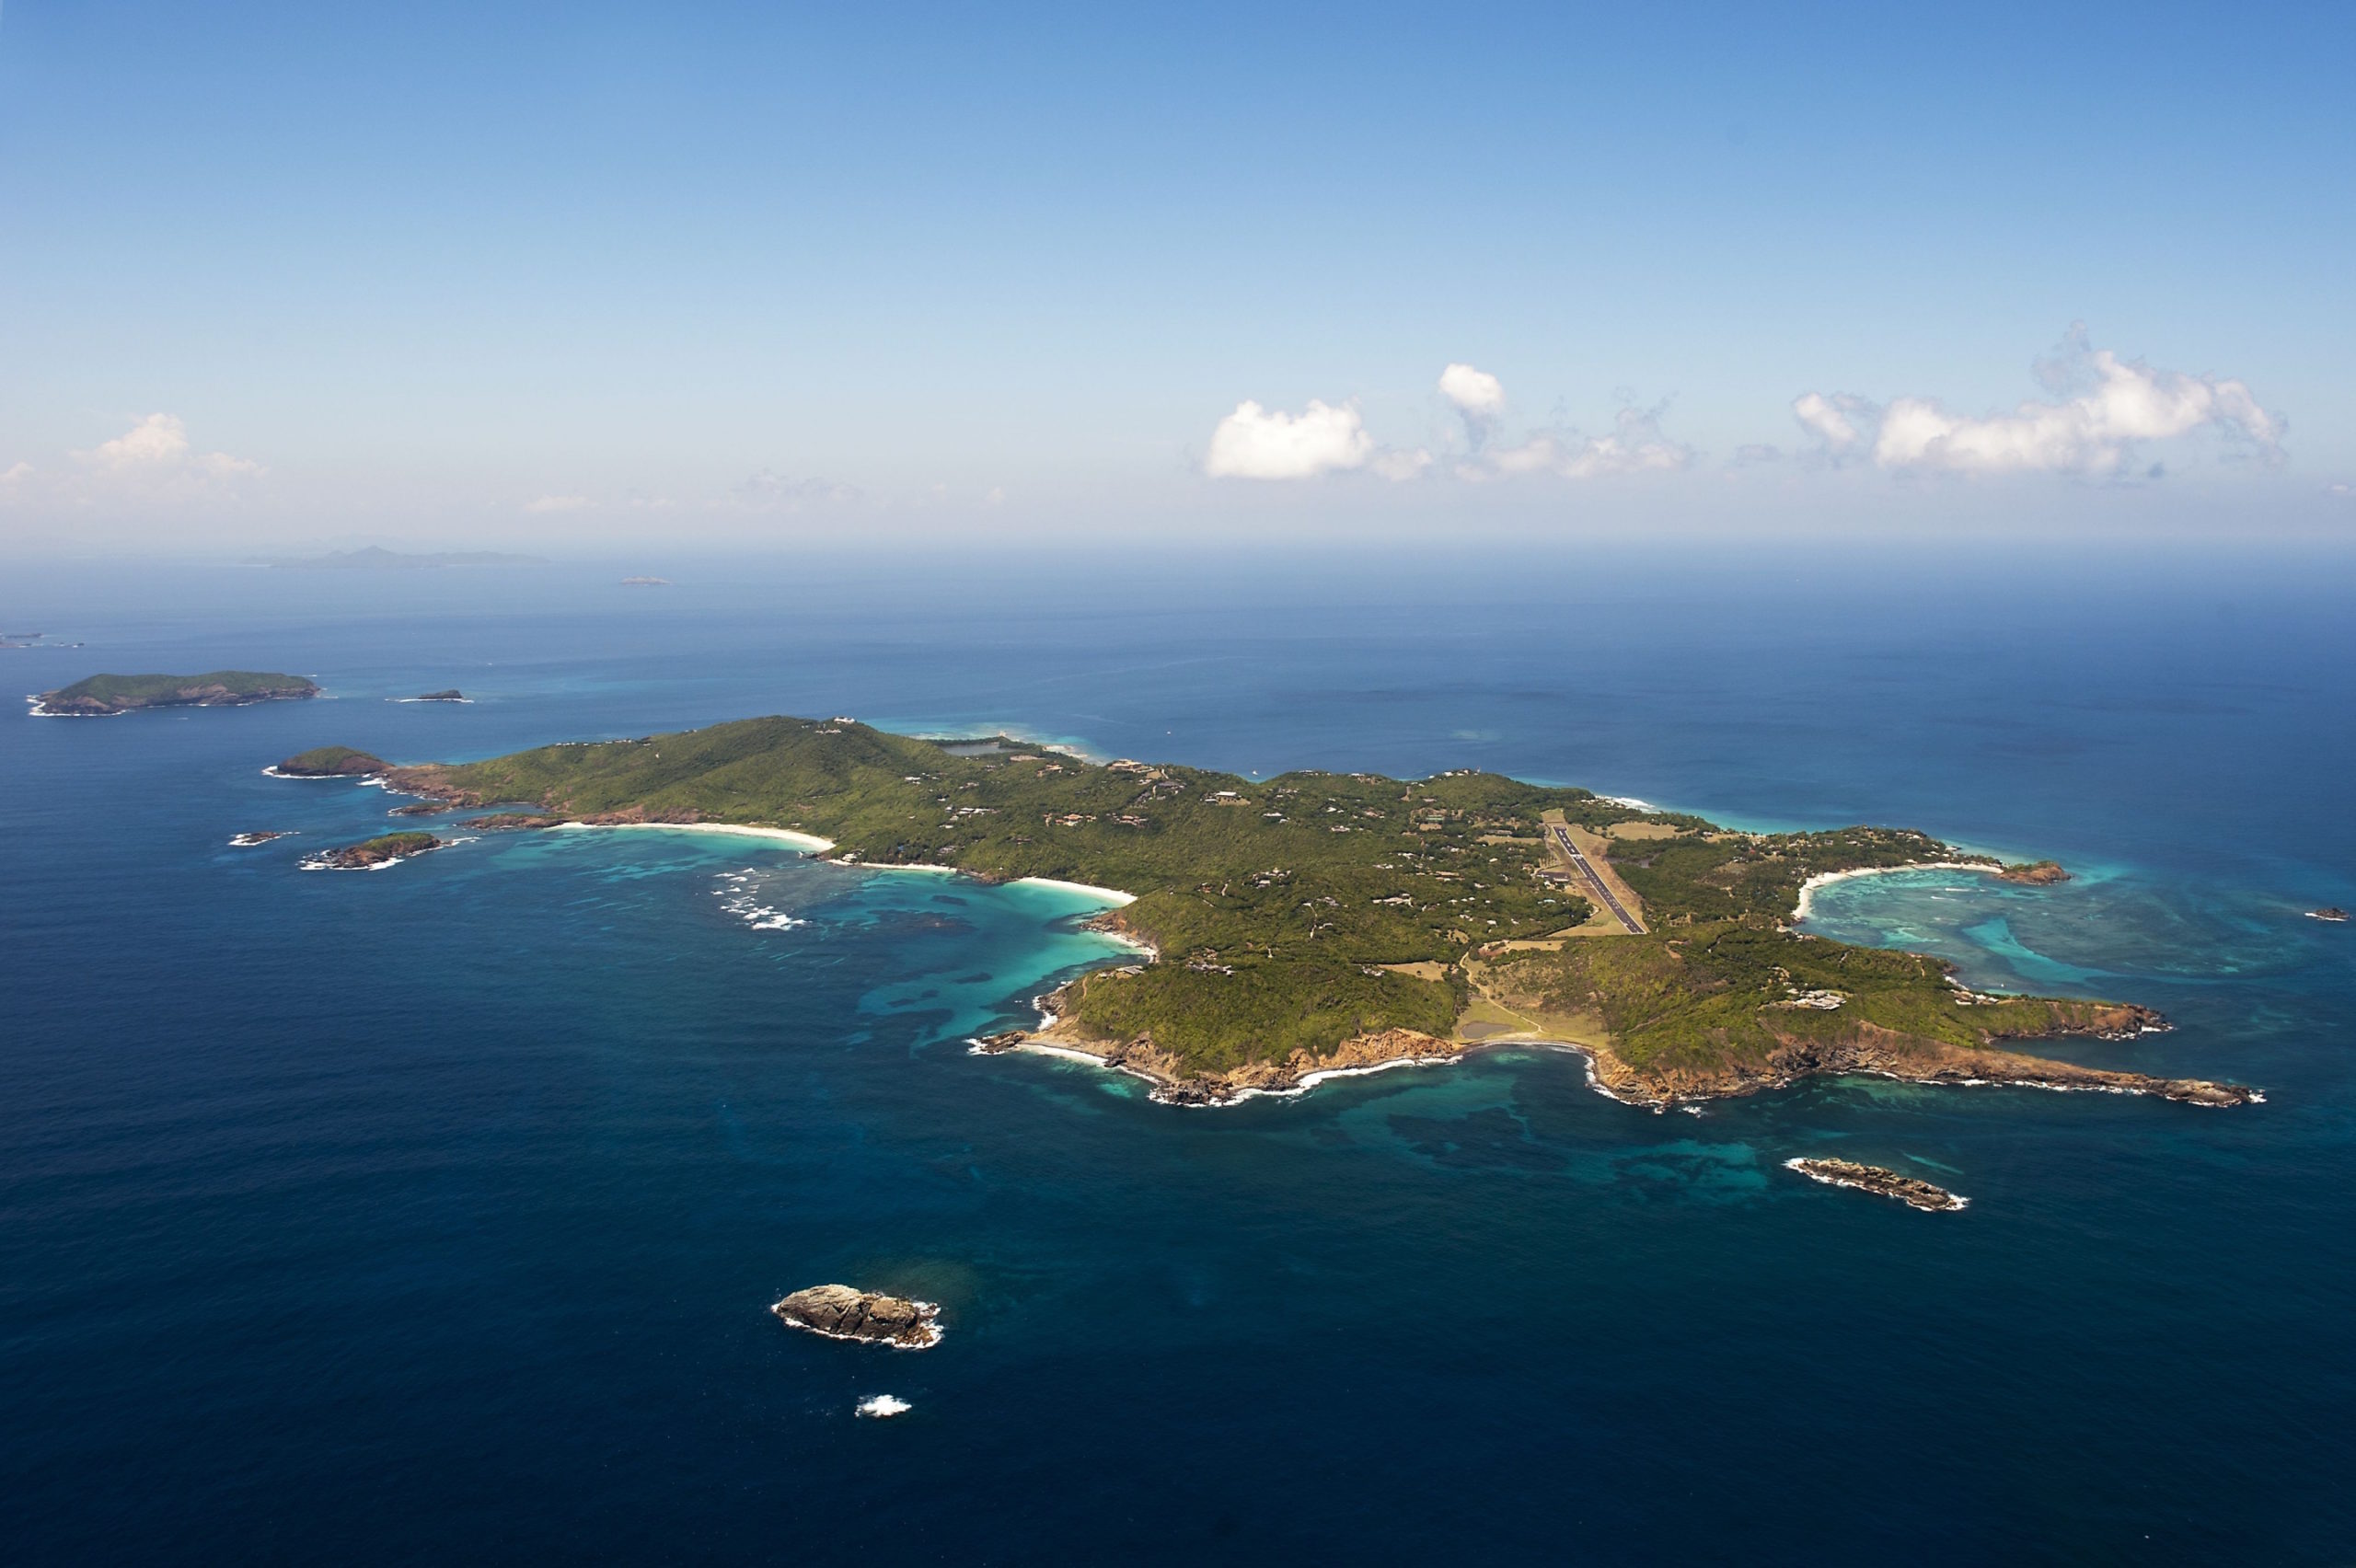 Южная часть архипелага малых антильских островов. Сент-Винсент и Гренадины остров Мюстик. Тортуга остров в Карибском море. Архипелаг малых Антильских островов. Остров Мюстик в Карибском море.